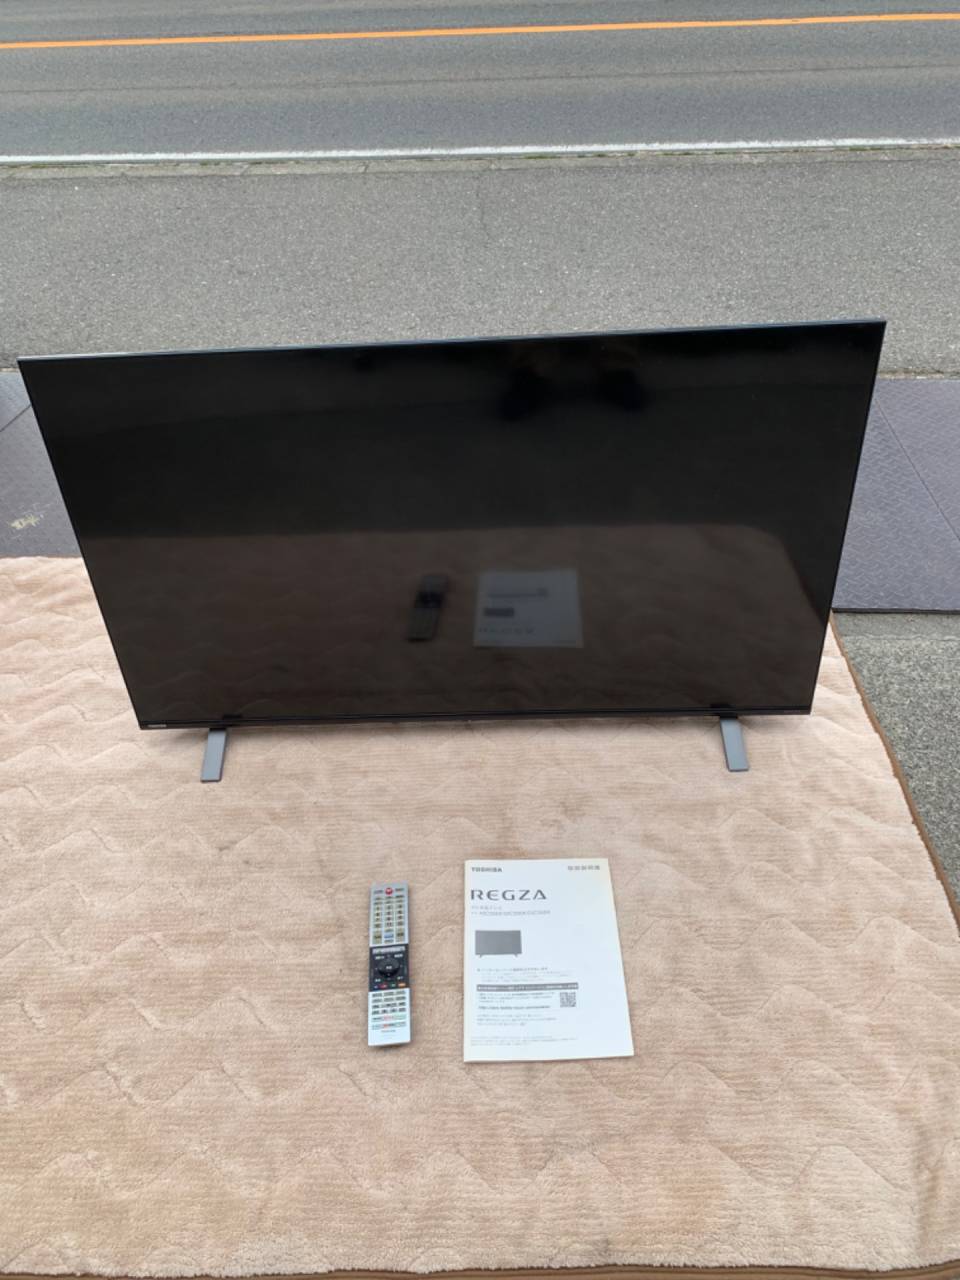 【買取り情報】東芝 レグザ 50V型 4K 液晶テレビ 50C350X 2022年製を出張買取りさせていただきました